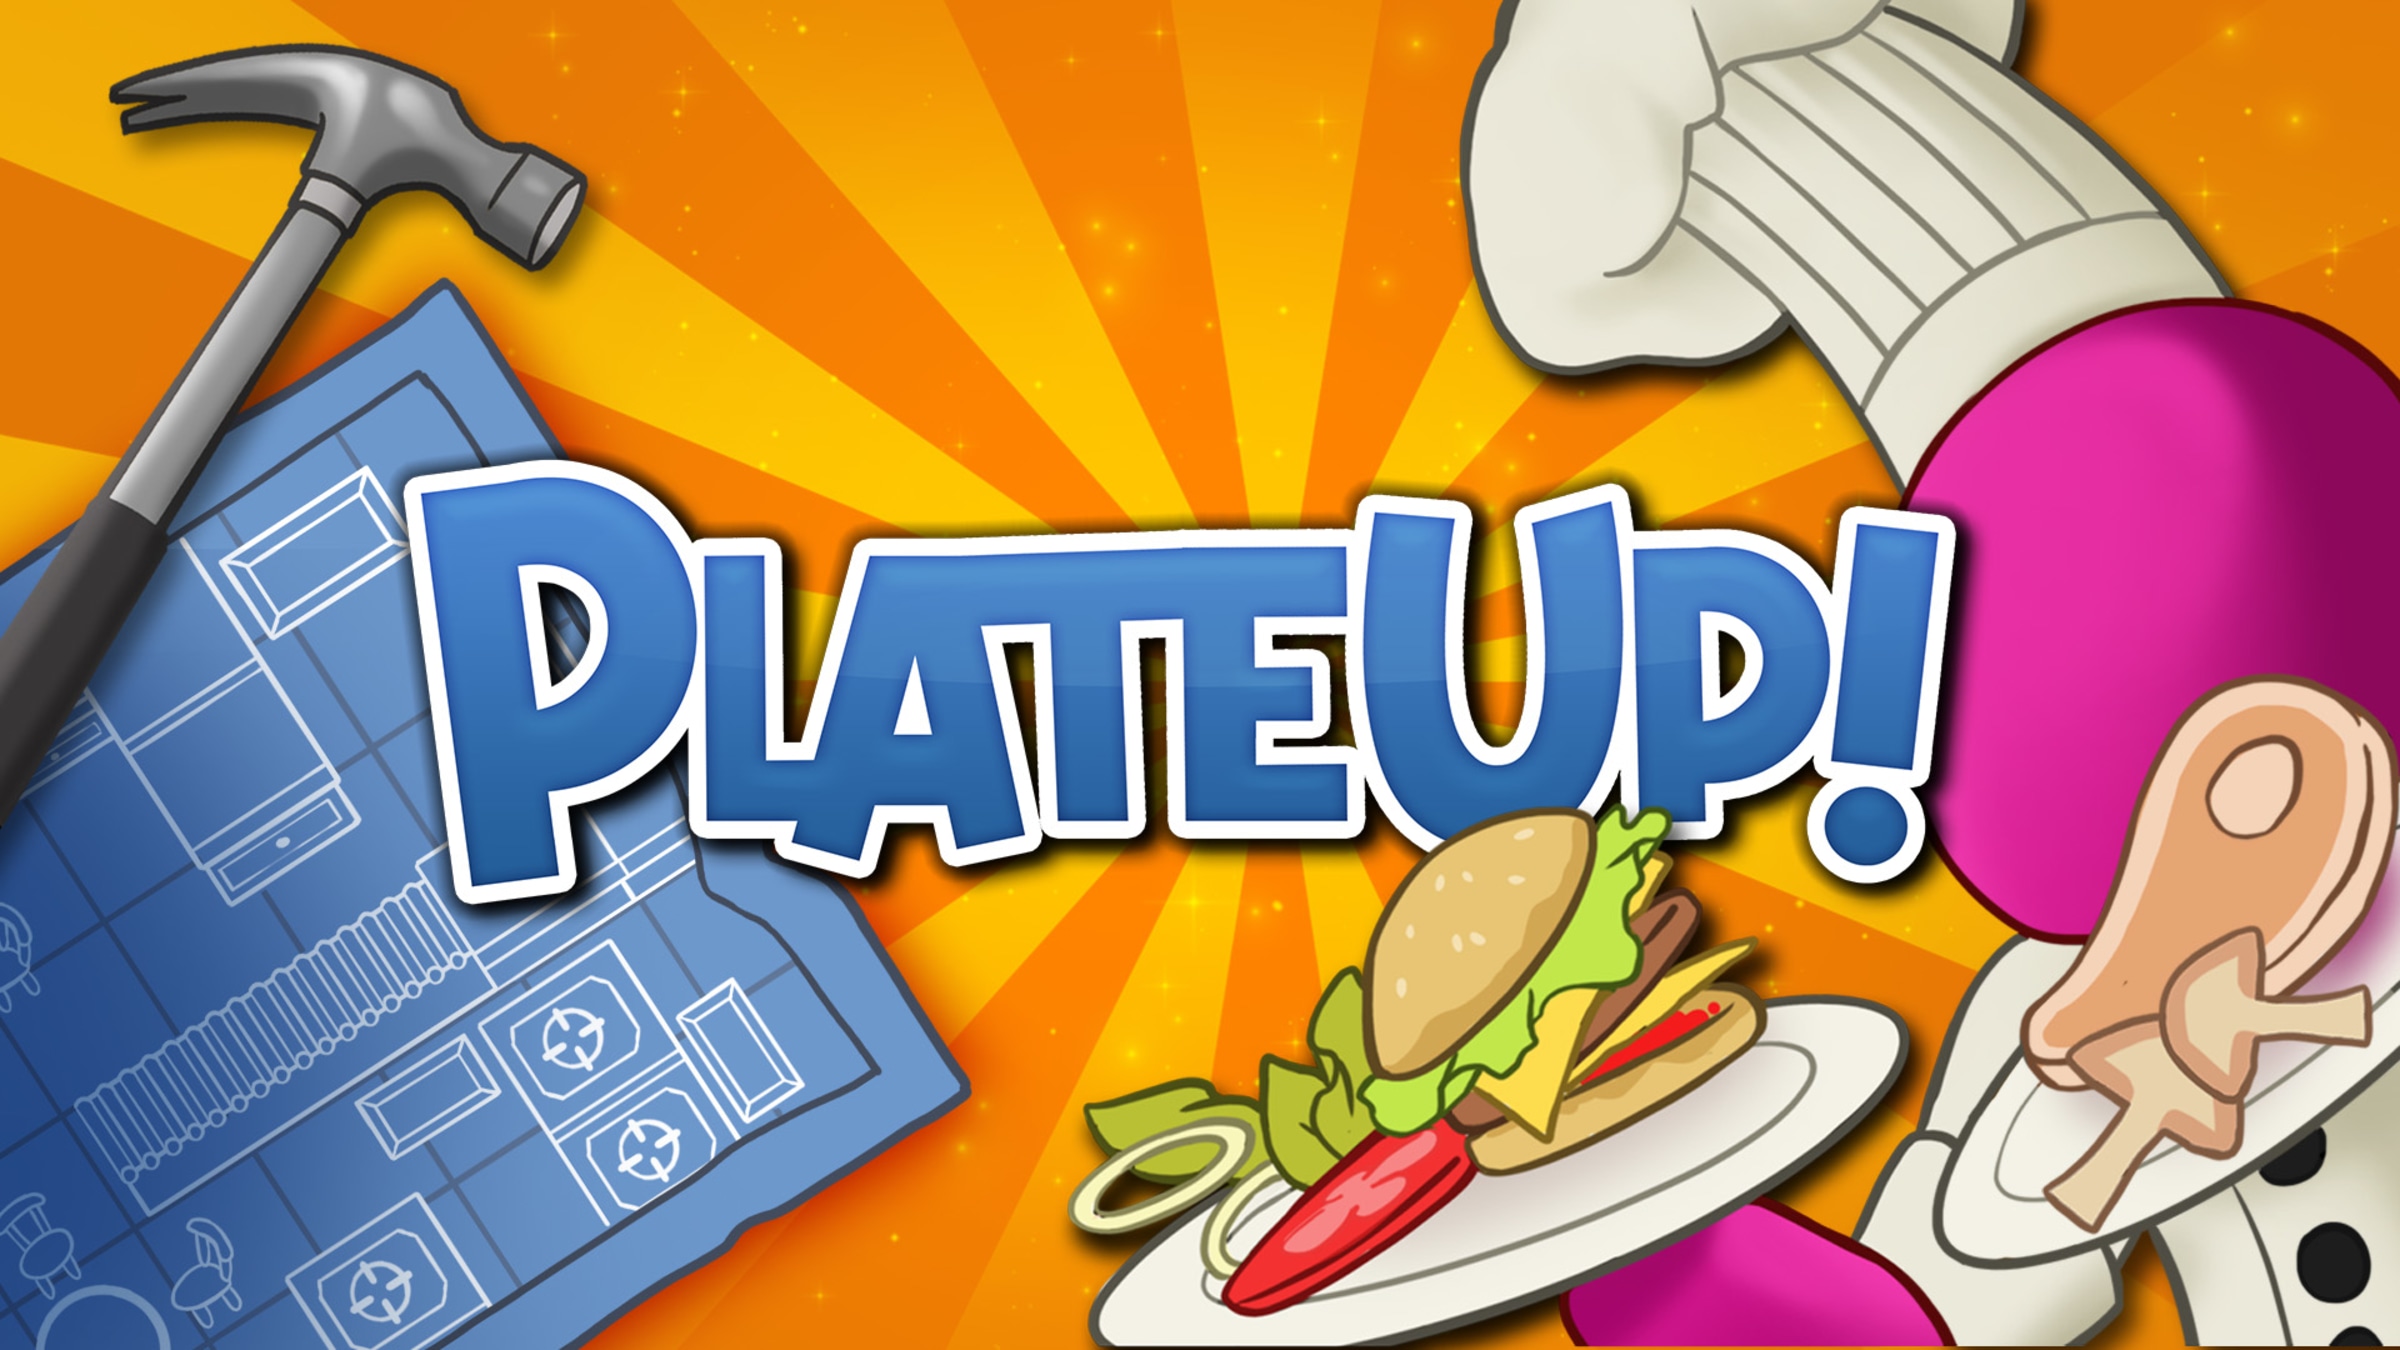 PlateUp Nintendo Version Full Game Setup Free Download